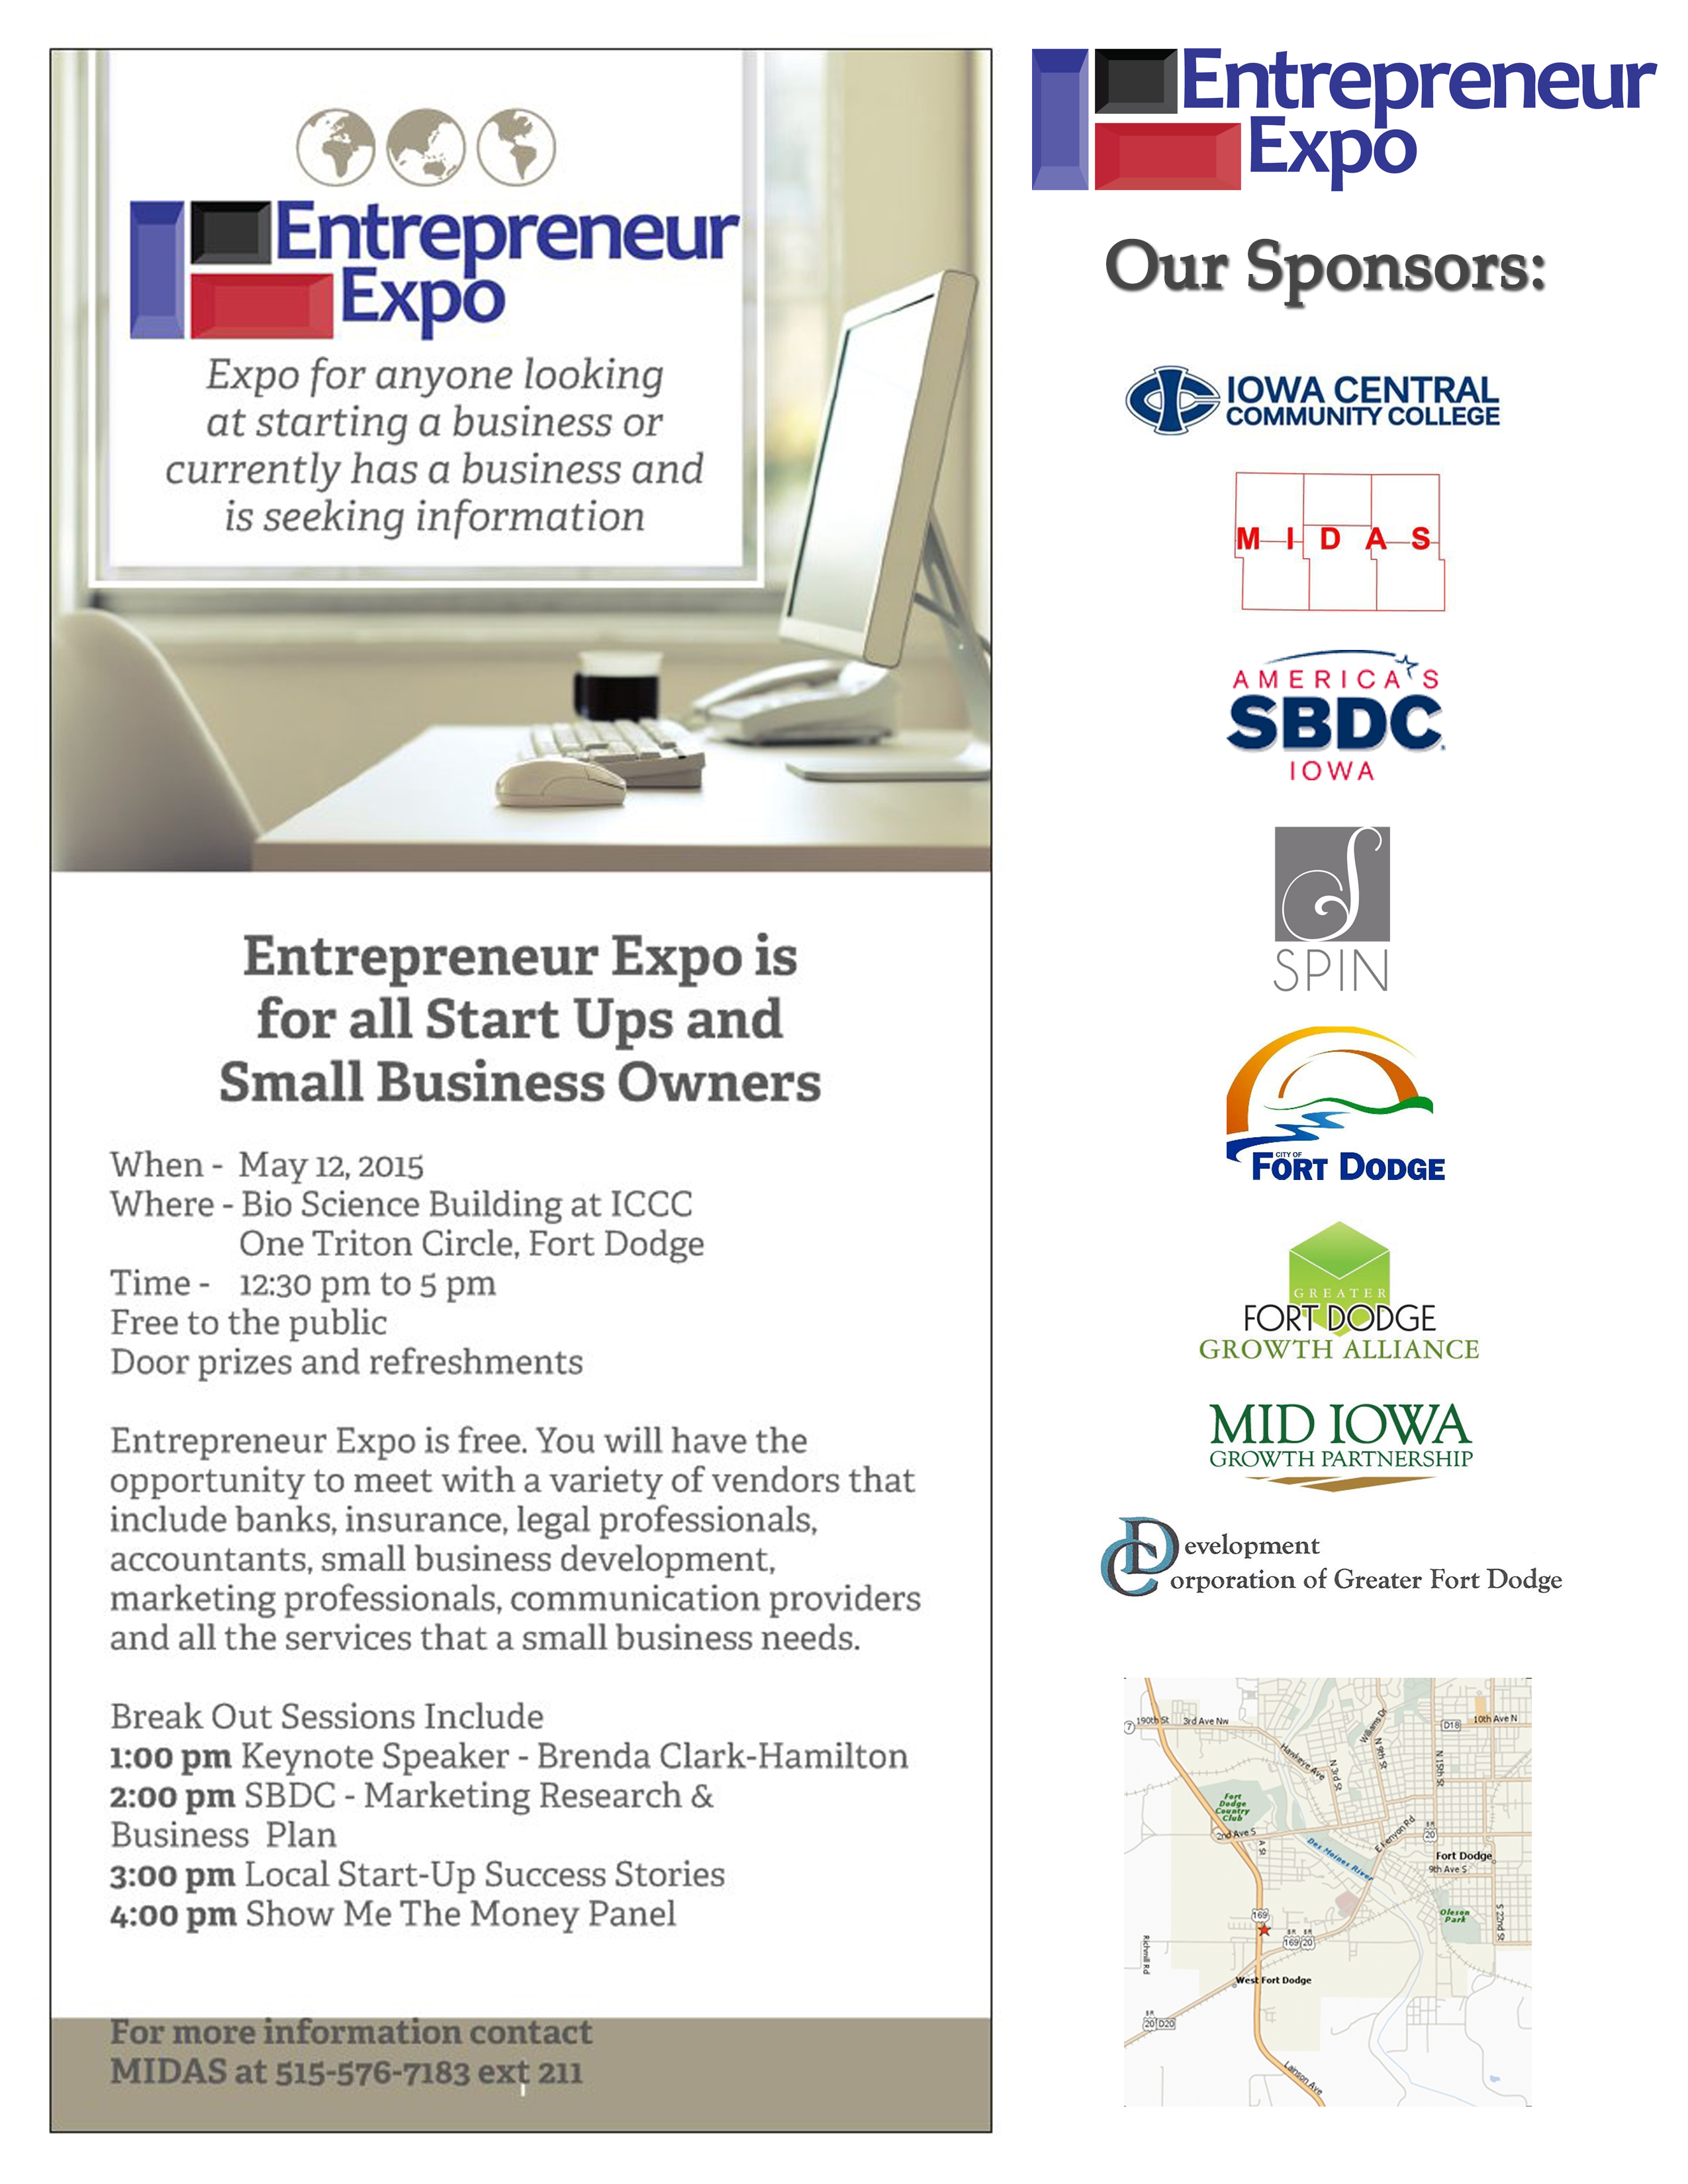 Entrepreneur Expo 2015 Flyer